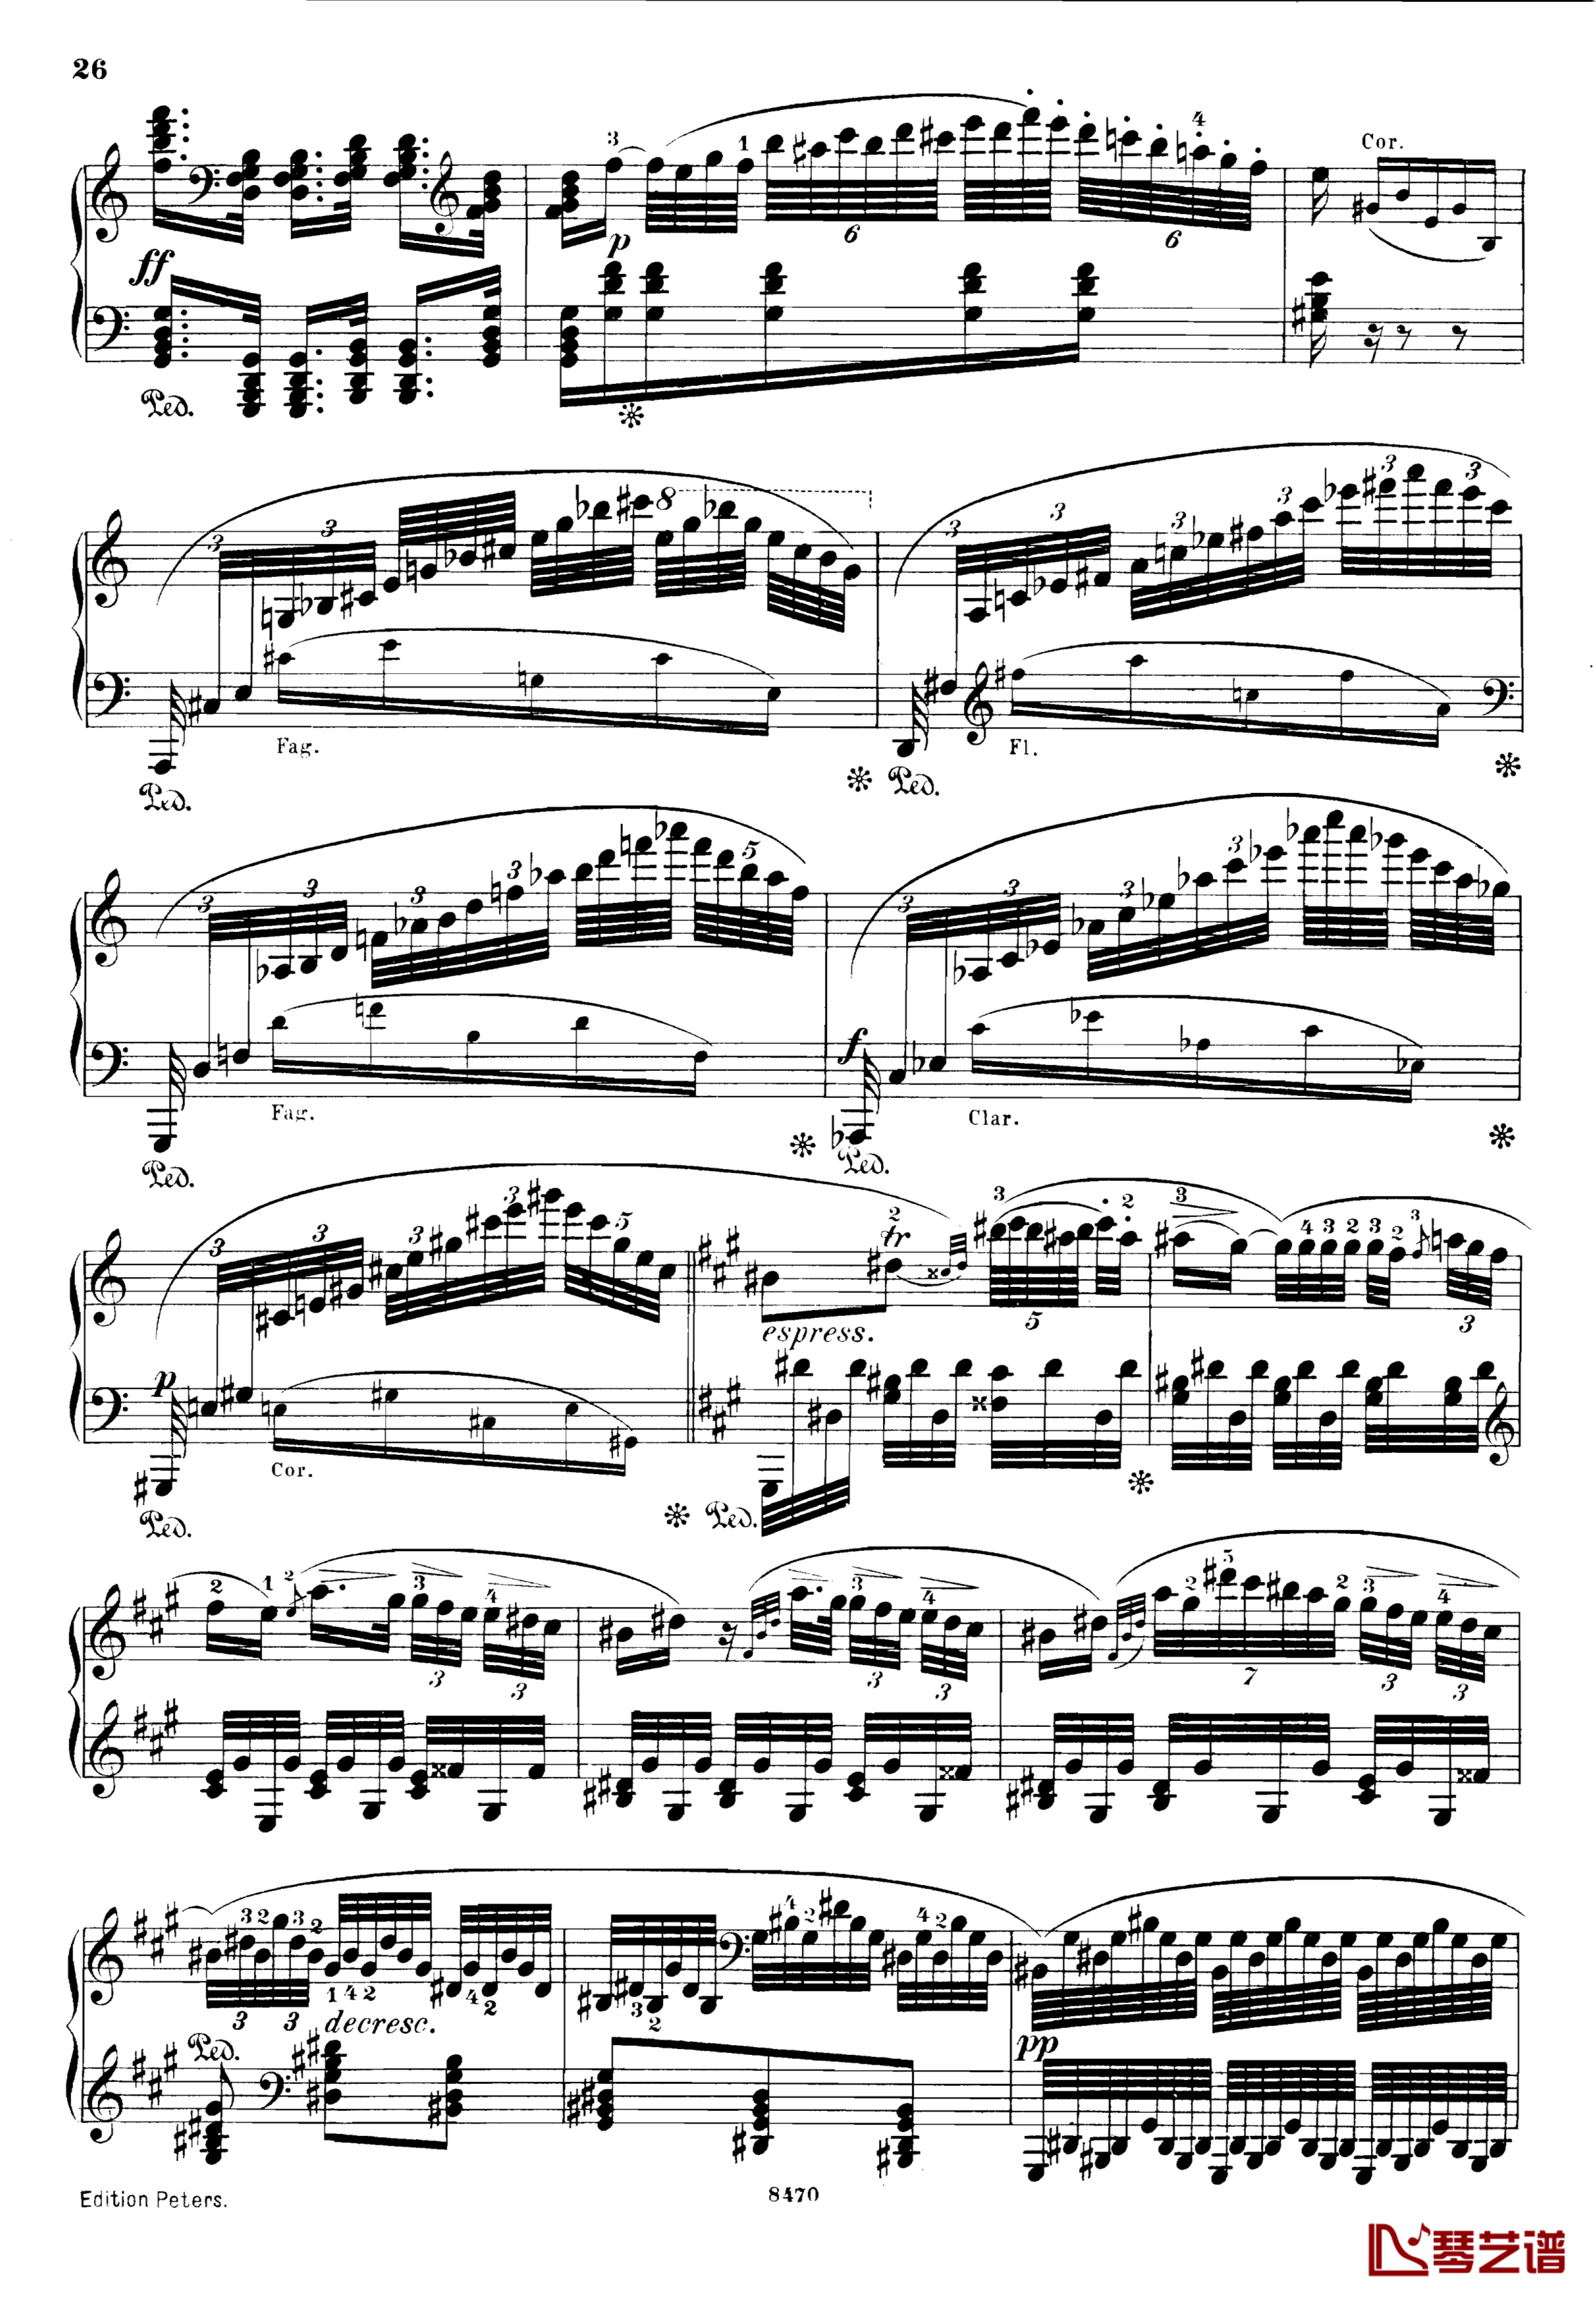 升c小调第三钢琴协奏曲Op.55钢琴谱-克里斯蒂安-里斯26